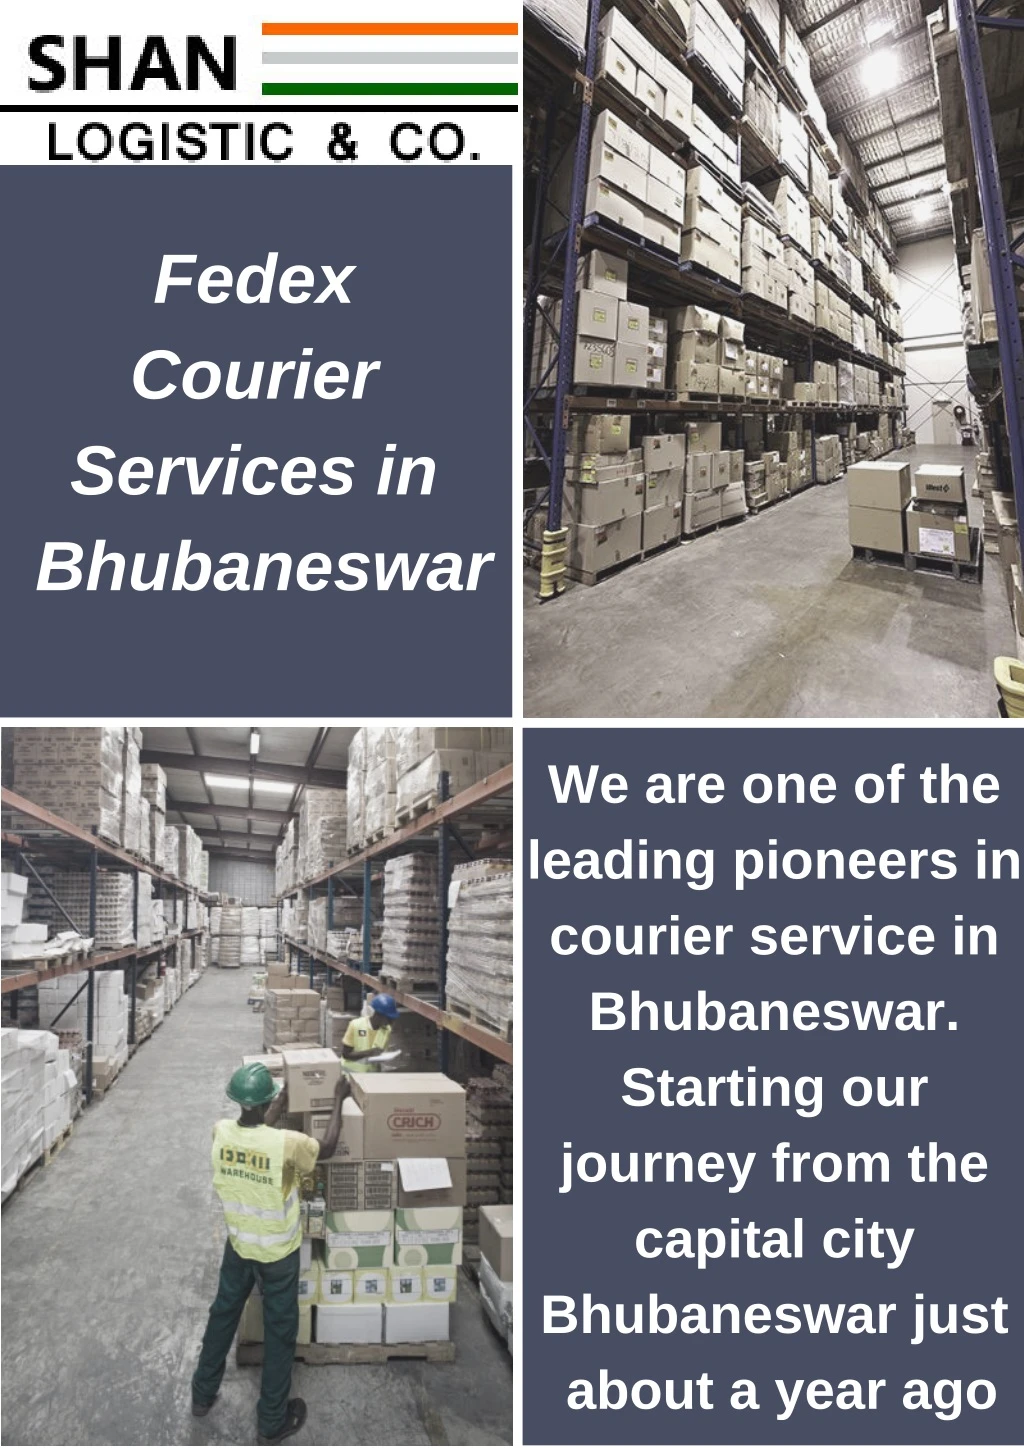 fedex courier services in bhubaneswar